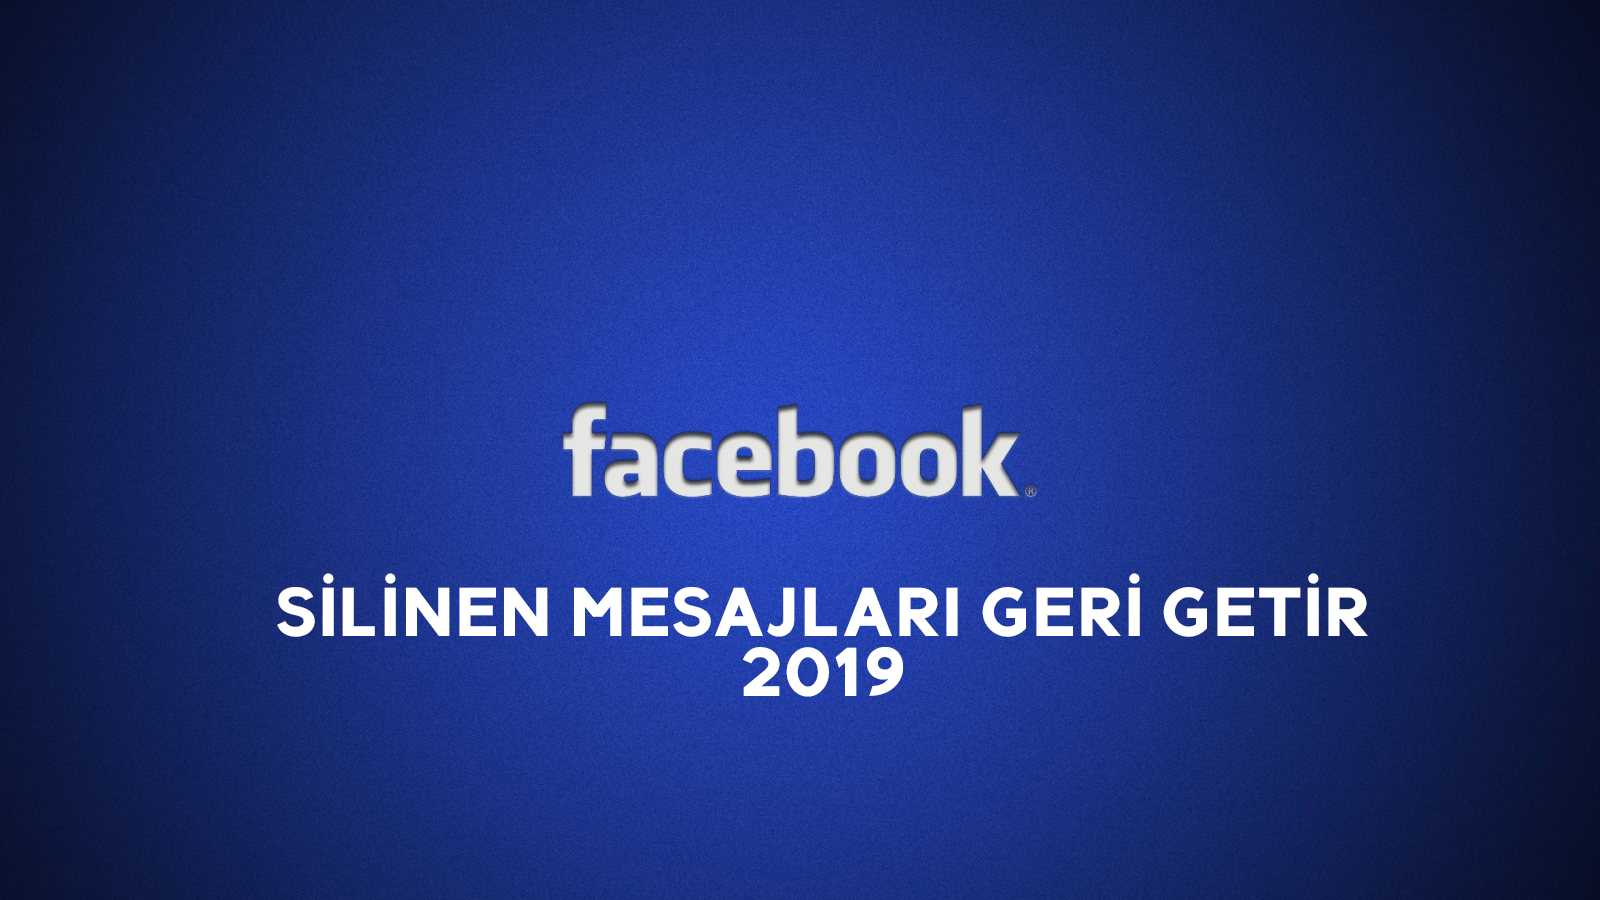 Facebook Messenger Silinen Mesajları Geri Getirme 2019